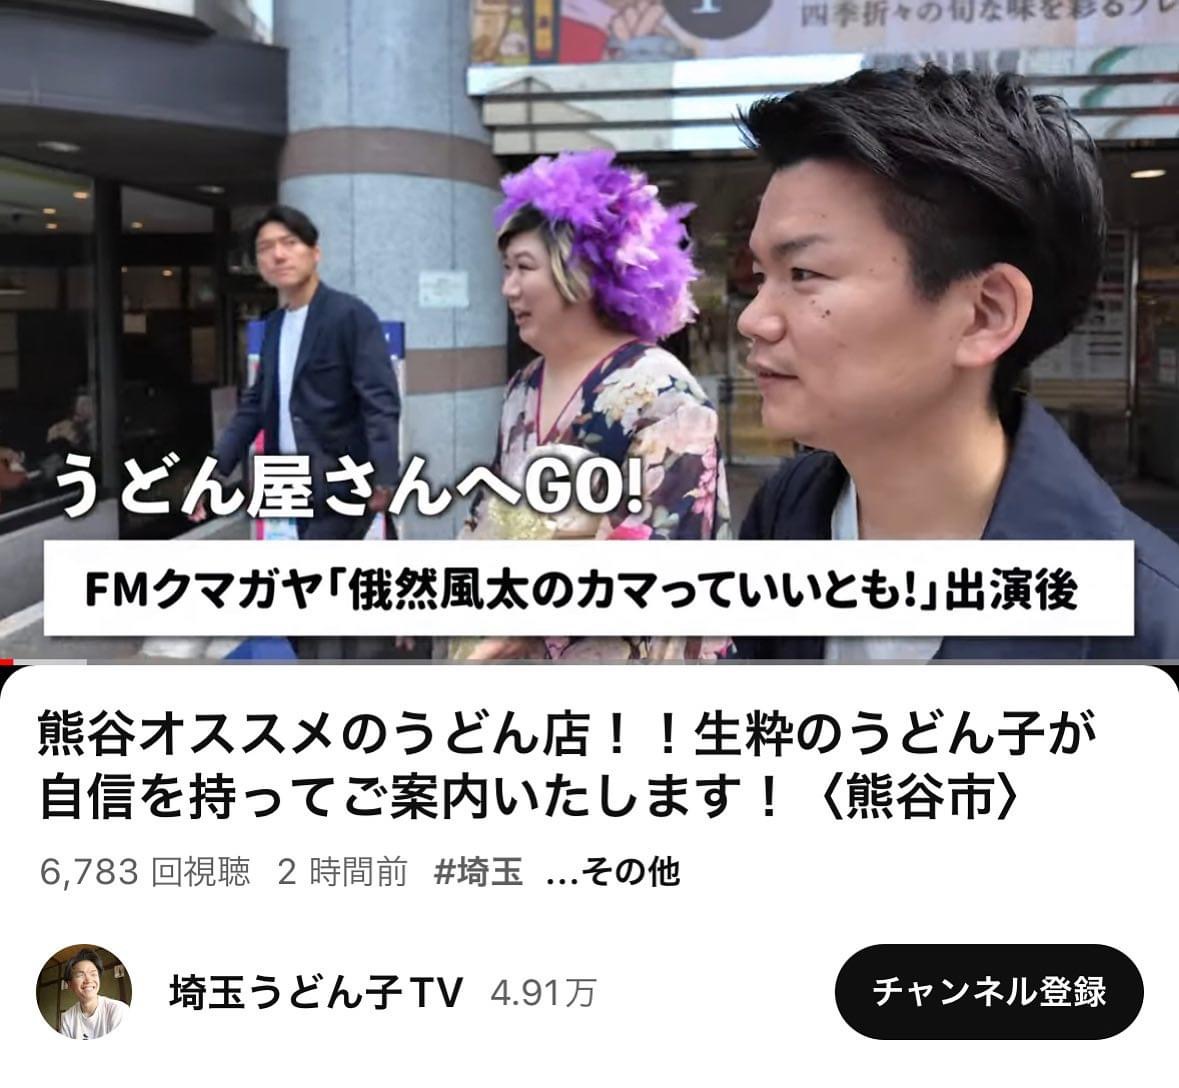 『埼玉うどん子TV』の最新動画です☝️